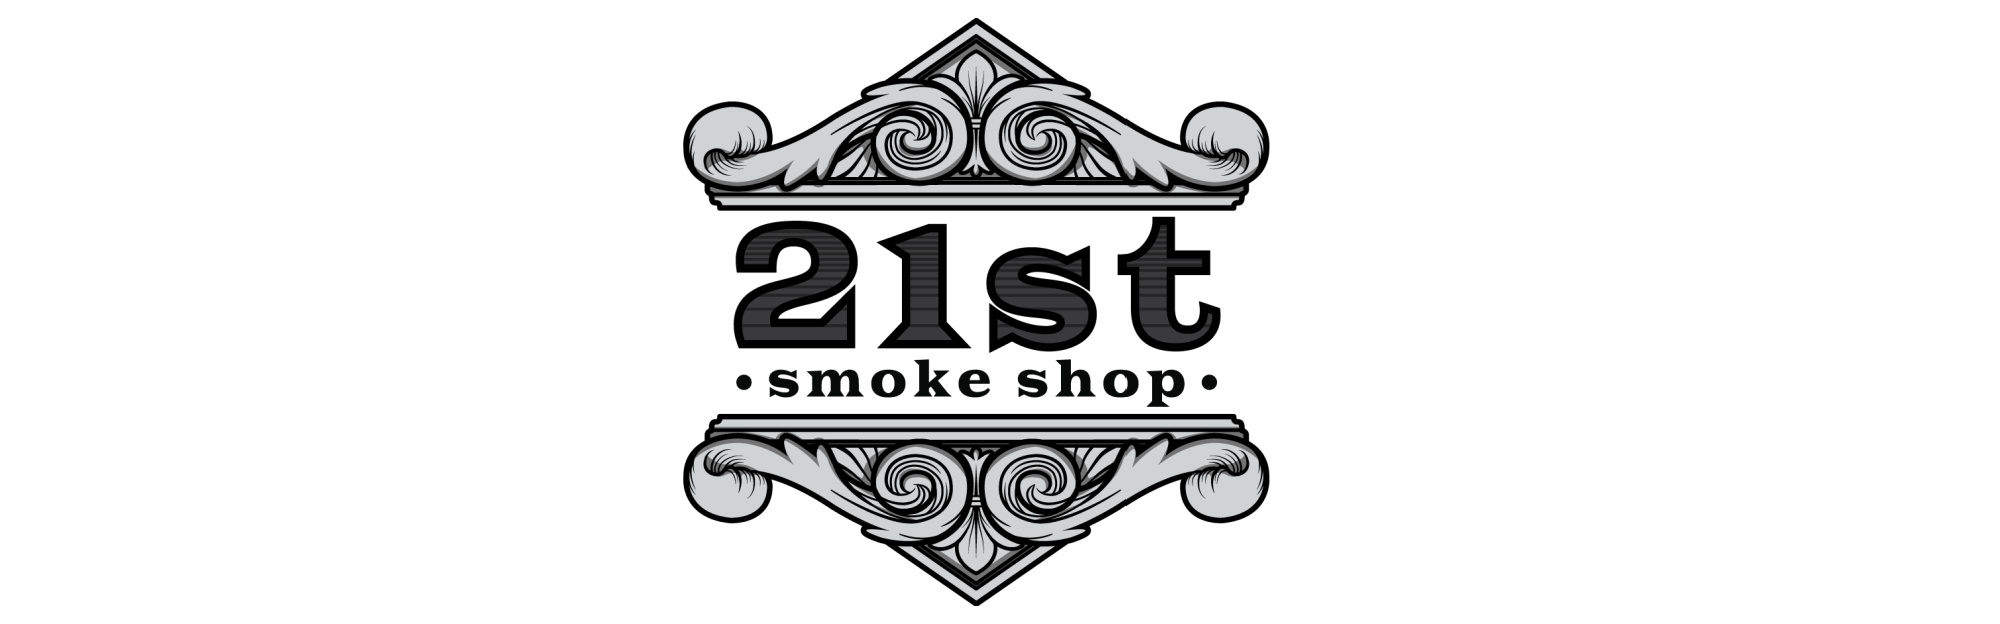 image of 21st smoke shop in salt lake city ut